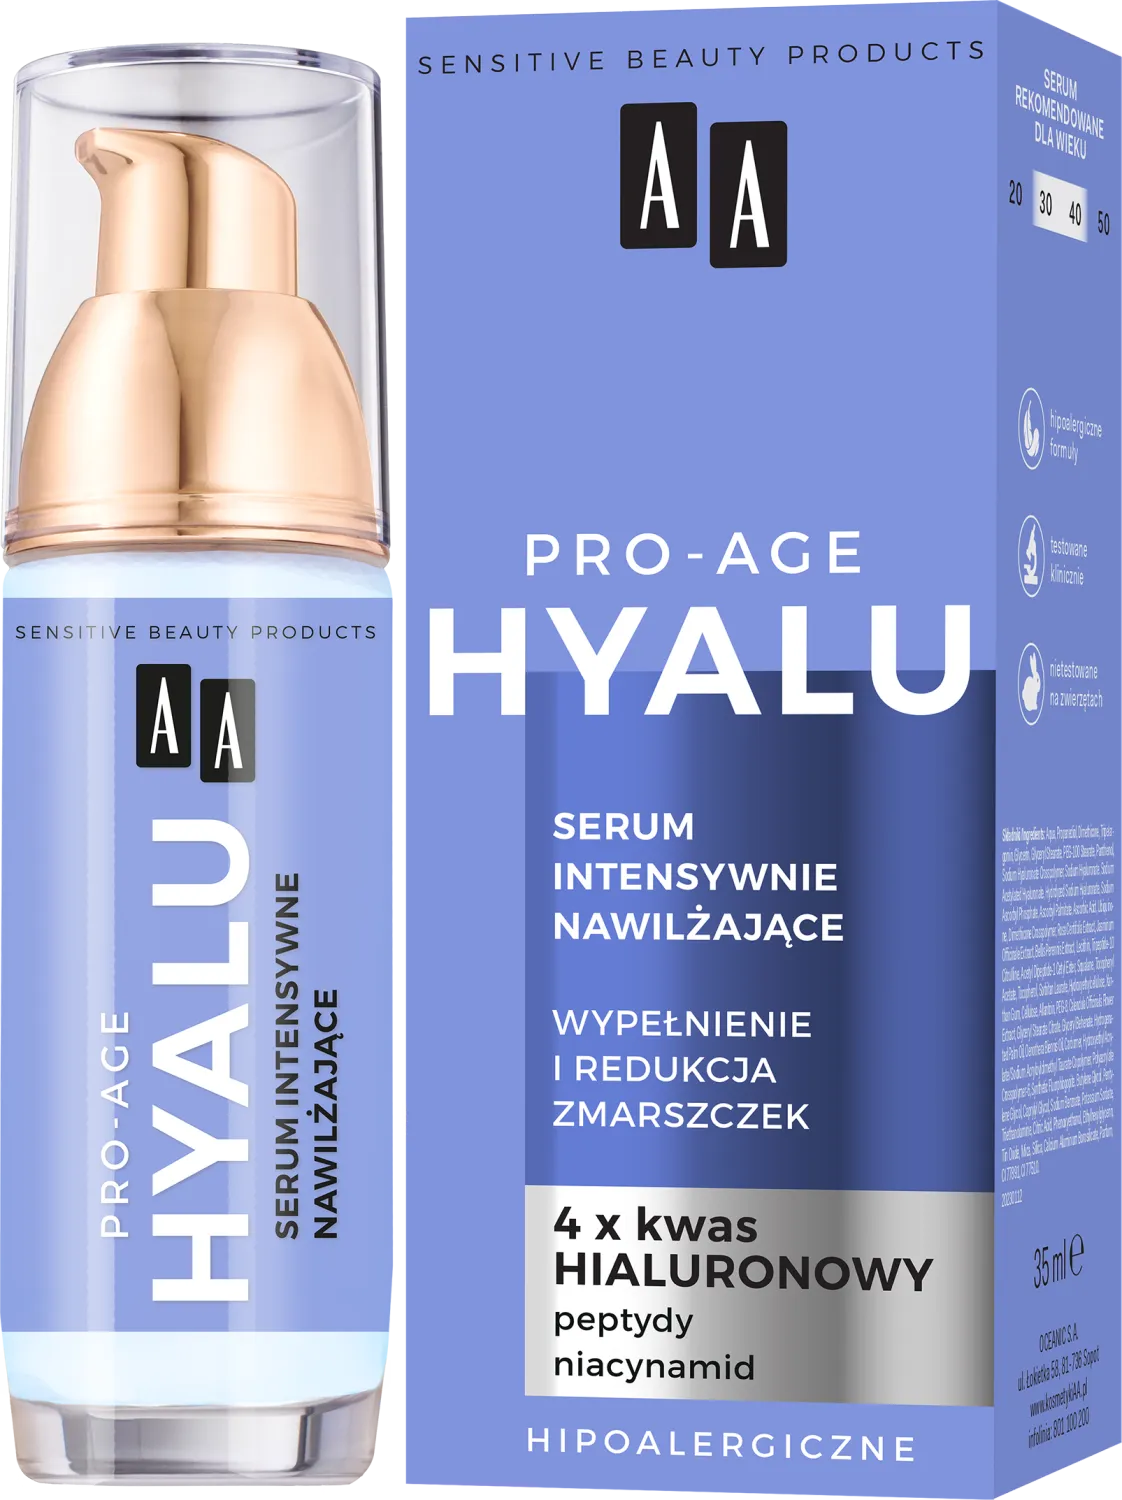 AA Pro-Age Hyalu serum intensywnie nawilżające, 35ml 